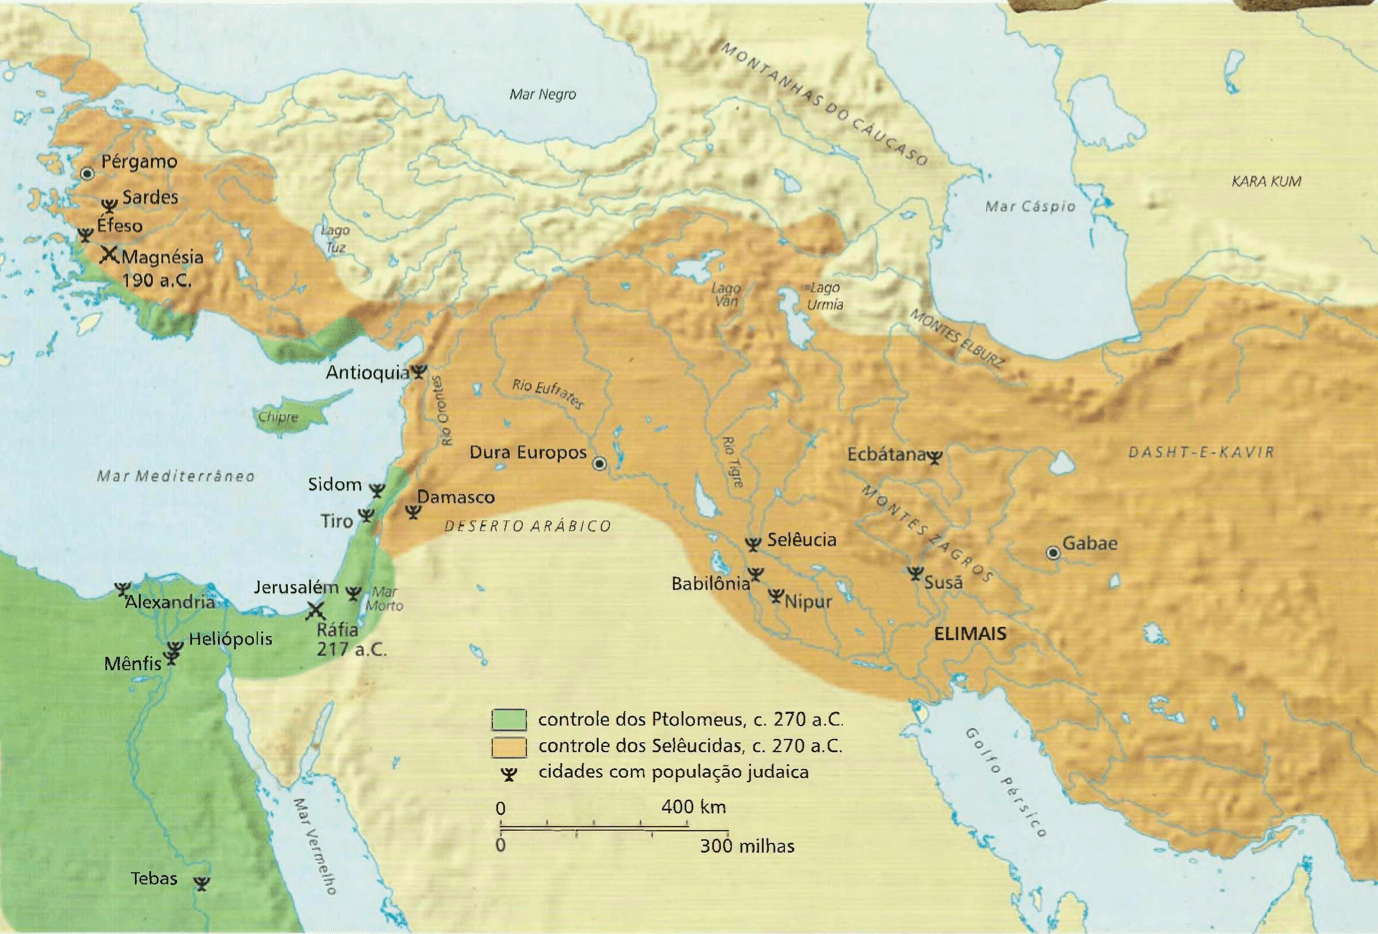 Os reinos dos Ptolomeus e Selêucidas Depois da morte de Alexandre, surgiram reinos rivais. A Palestina ficou sob o domínio do Egito ptolomaico até 198 a.C, quando passou ao domínio selêucida, da Síria.